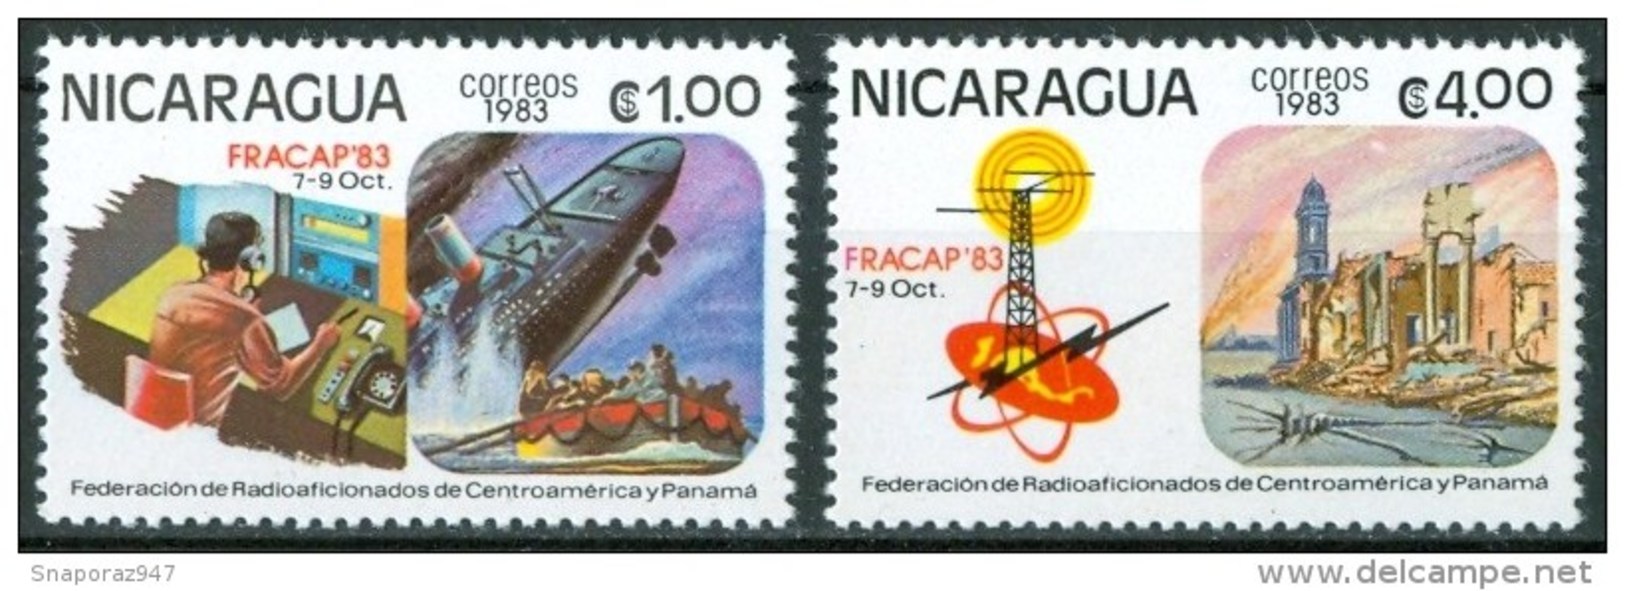 1983 Nicaragua Radioamatori Radioamateurs Set MNH** B414 - Telecom